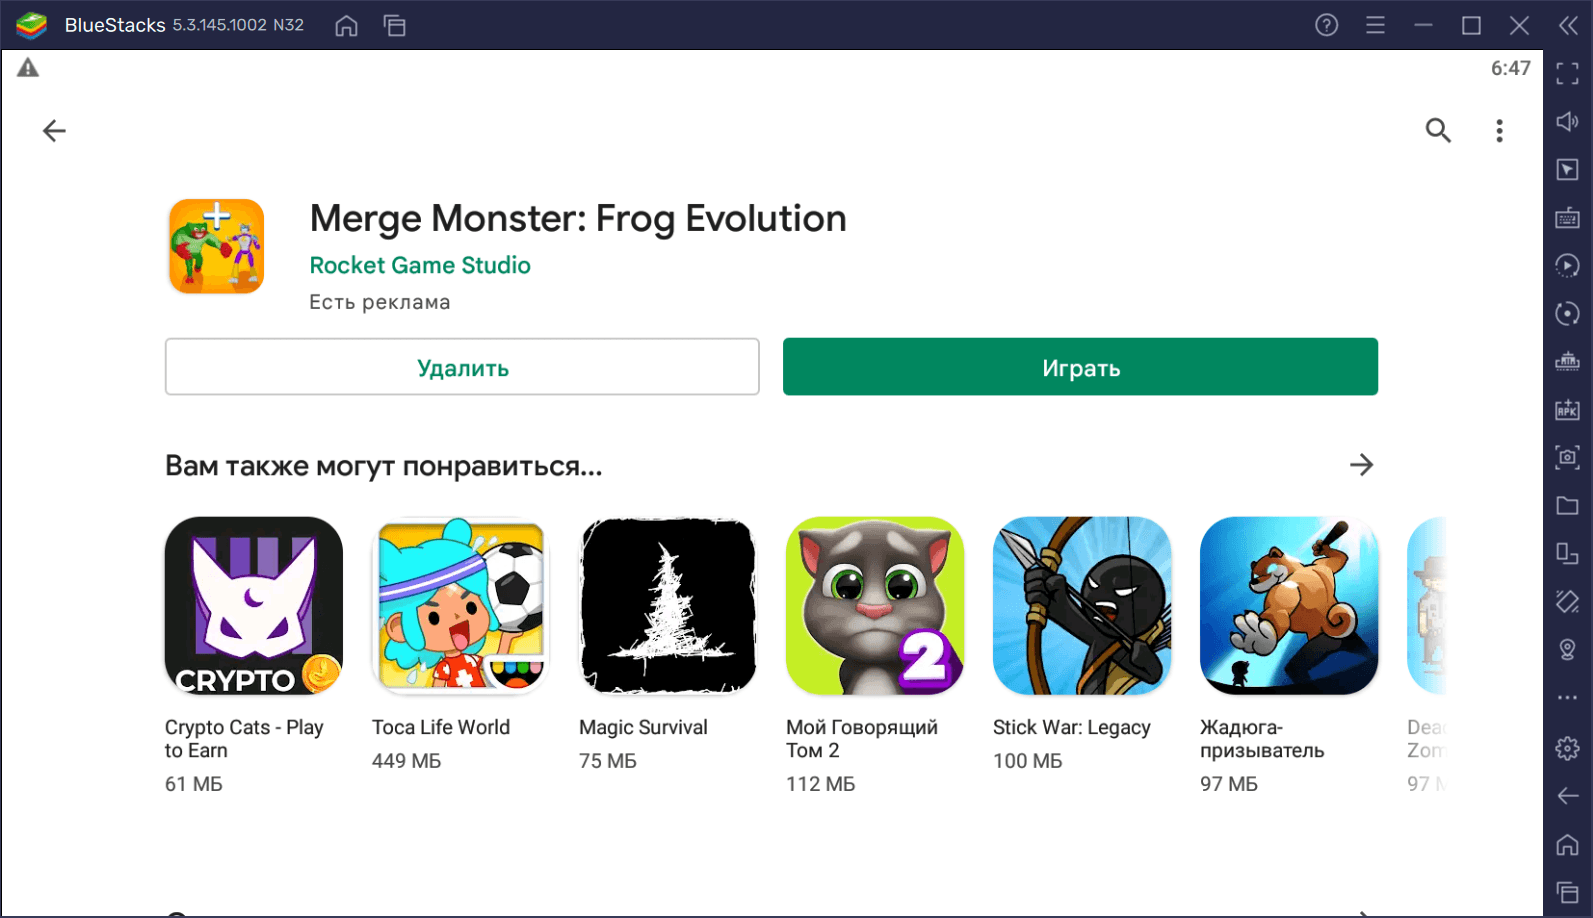 Как скачать Merge Monster: Frog Evolution на ПК с BlueStacks?